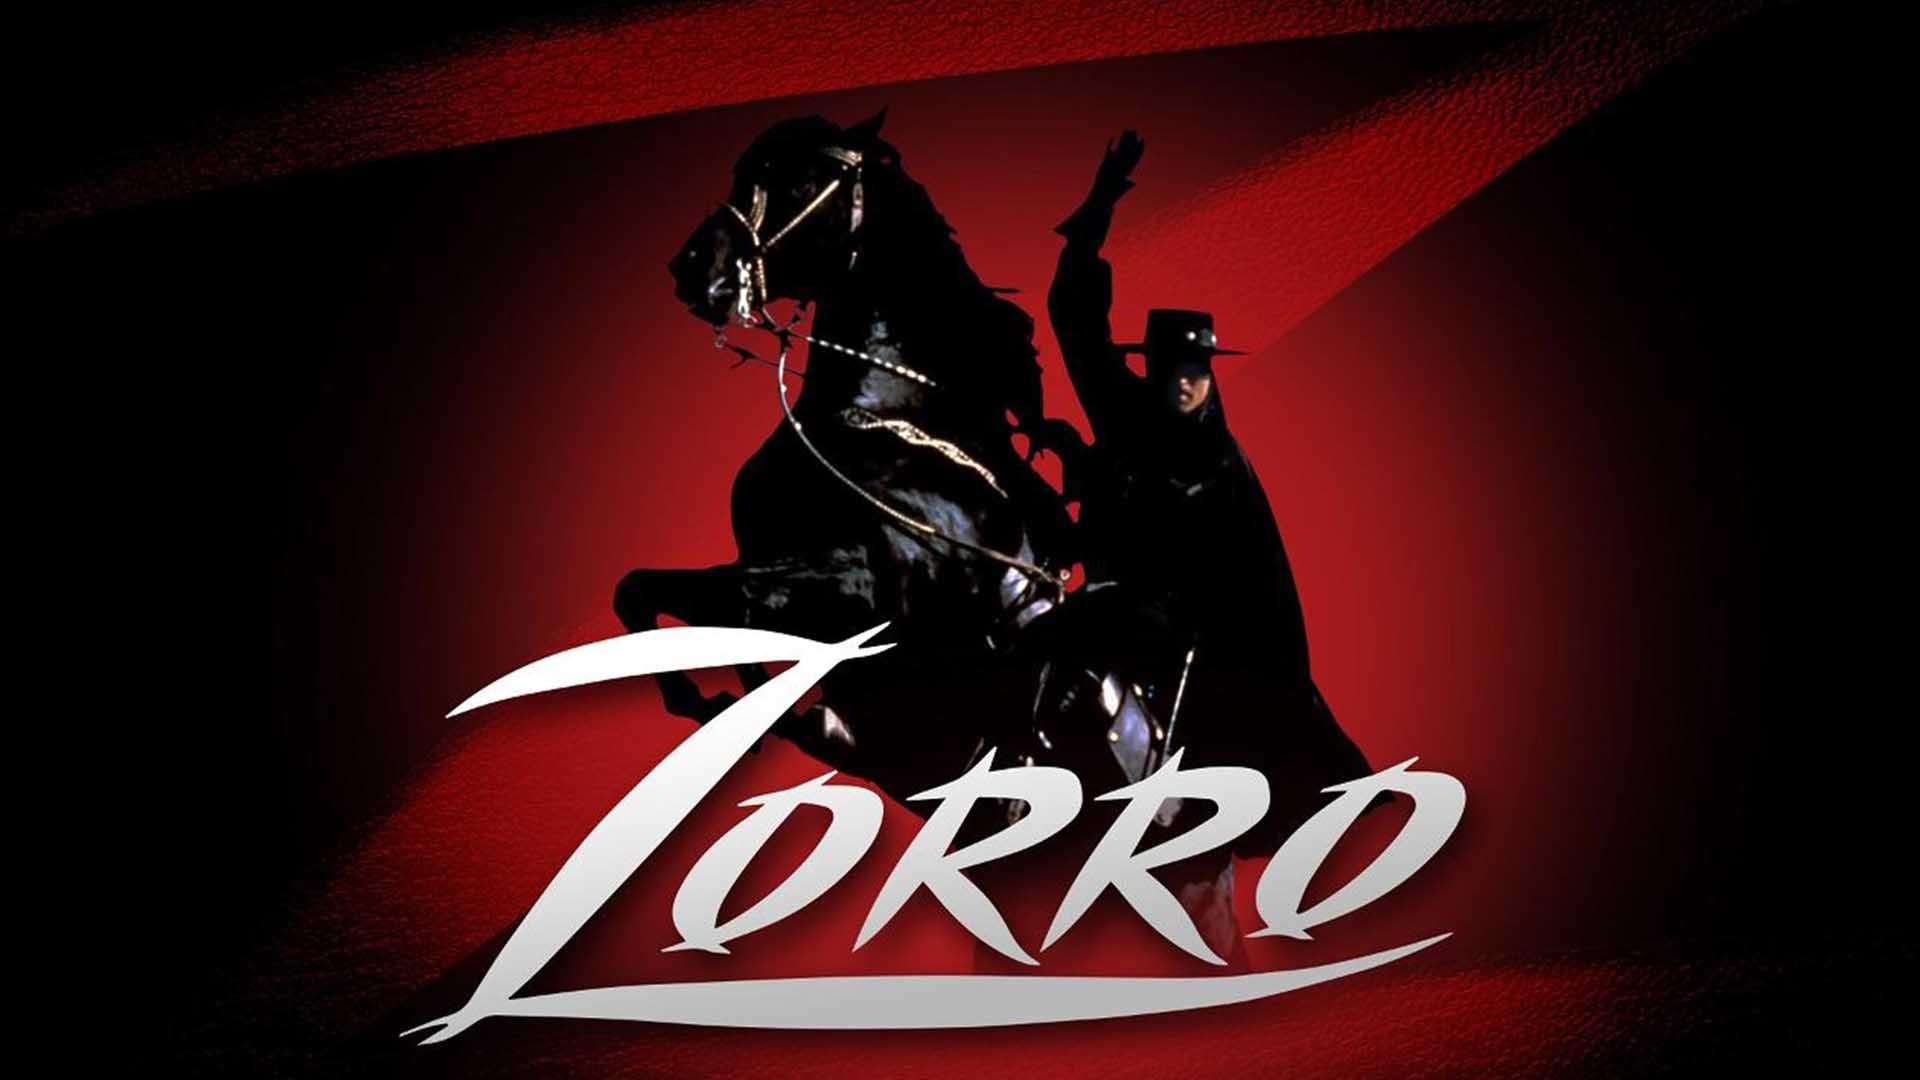 دانکن رگر در نقش زورو در پوستر سریال Zorro